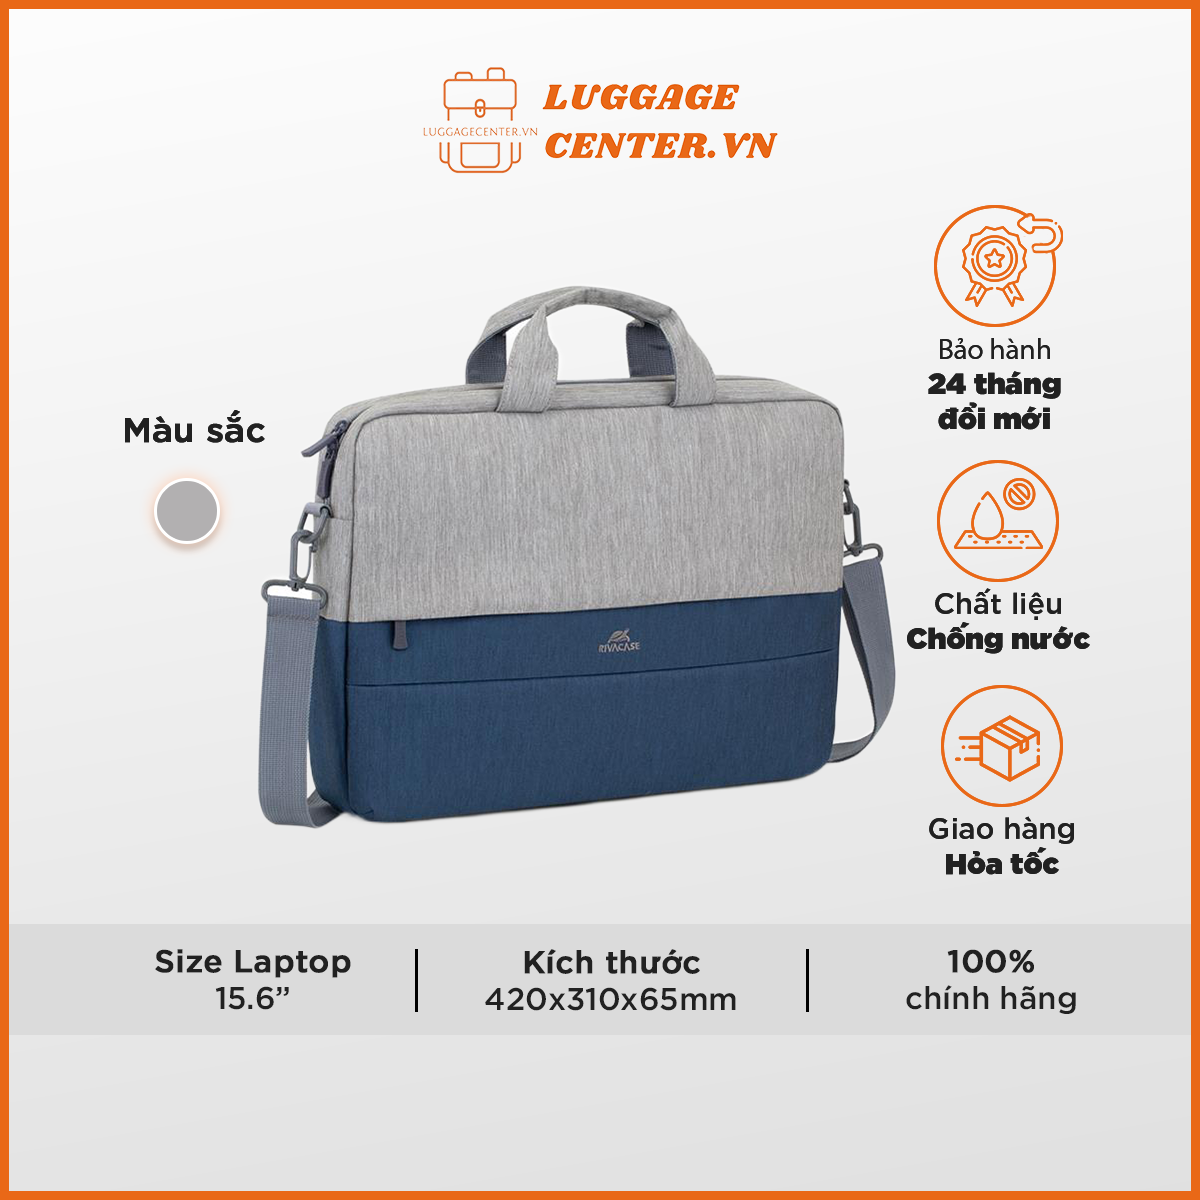 Túi xách dành cho laptop 15.6" Rivacase 7532